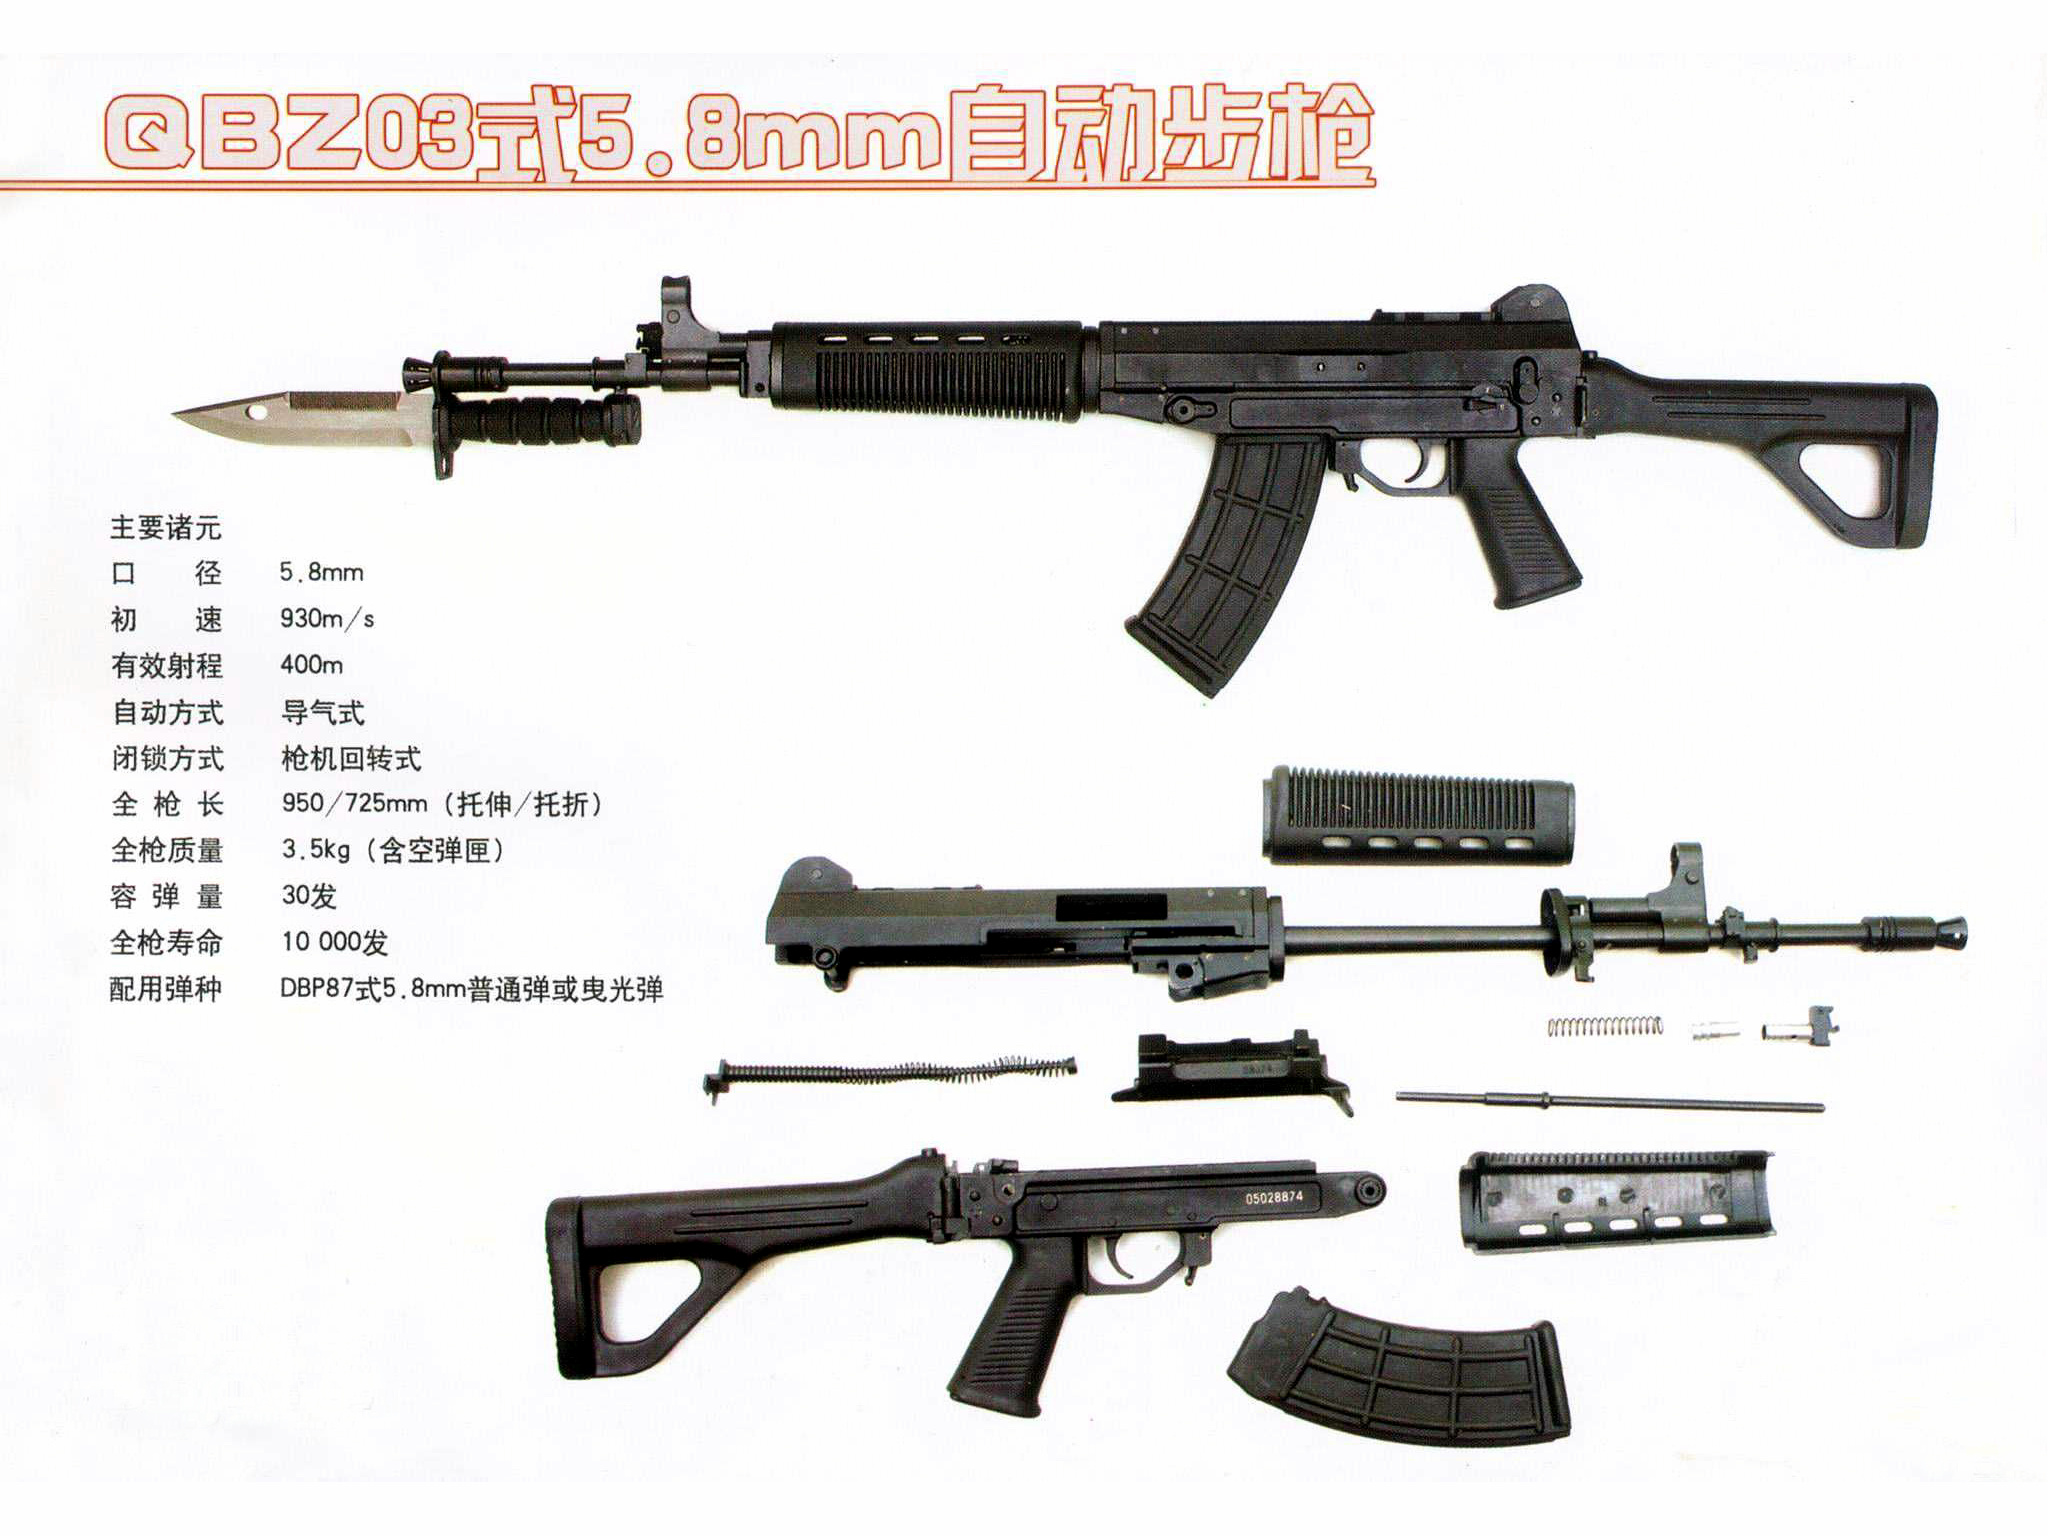 03式自動步槍